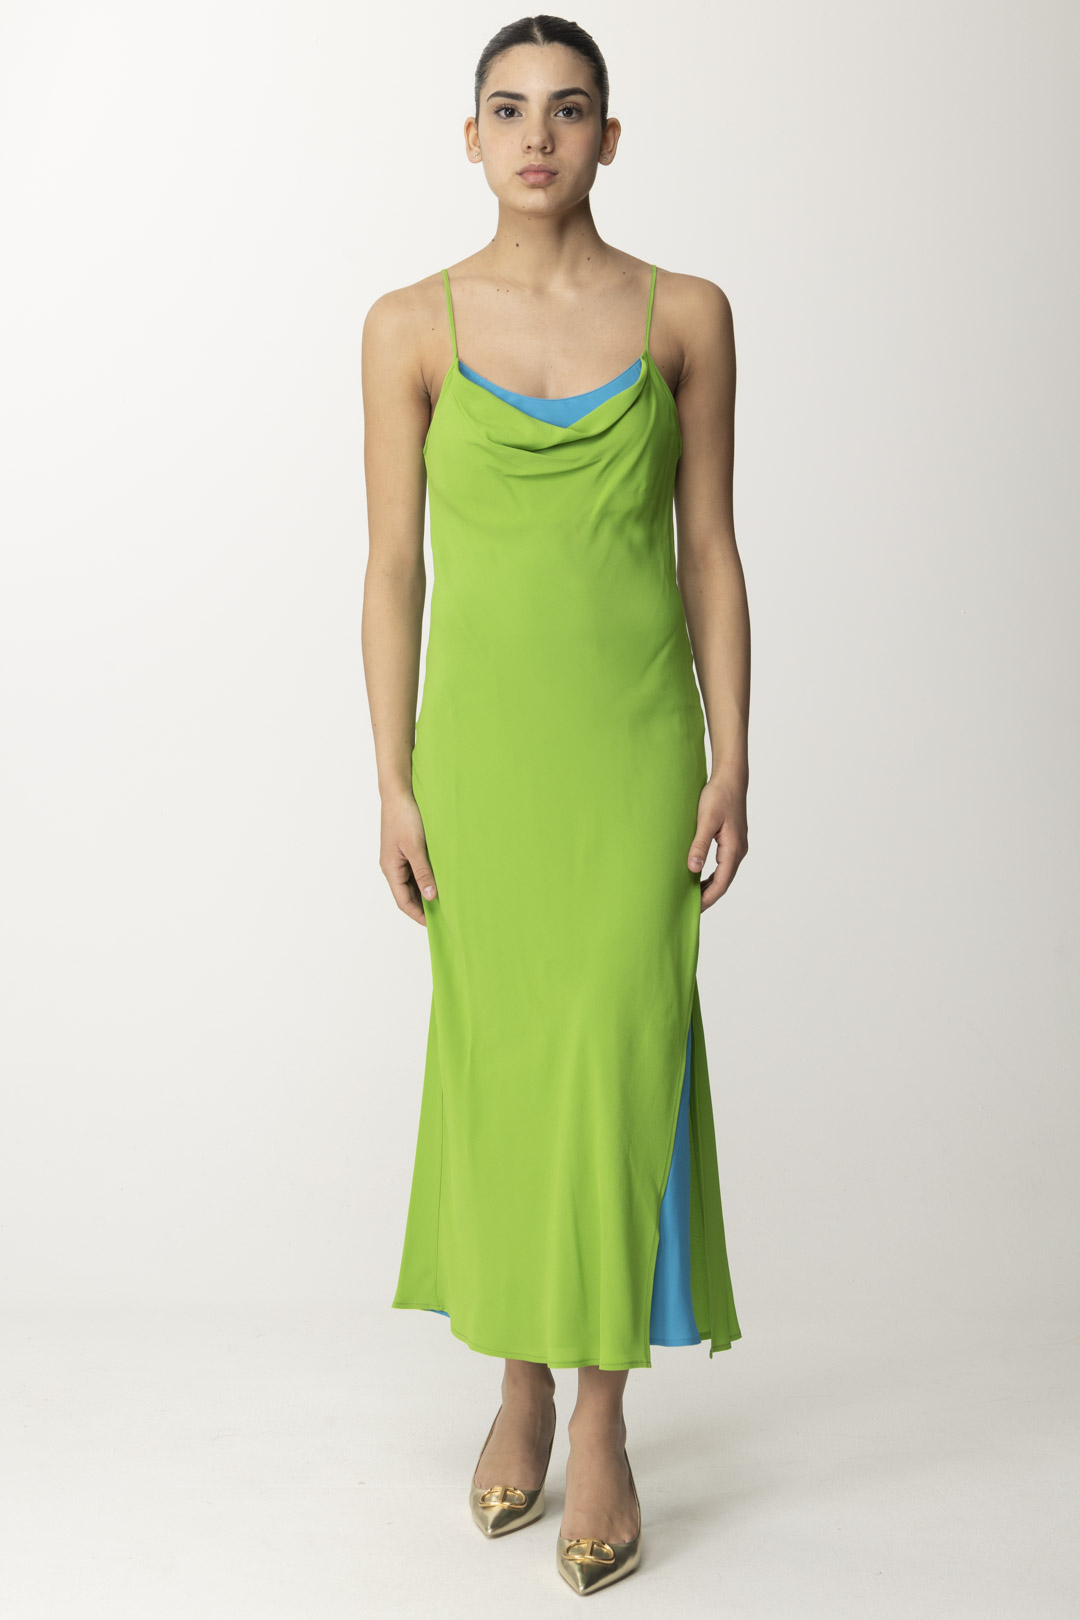 Podgląd: Semicouture Dwukolorowa sukienka z krepy chińskiej Adelina Linfa / Summer